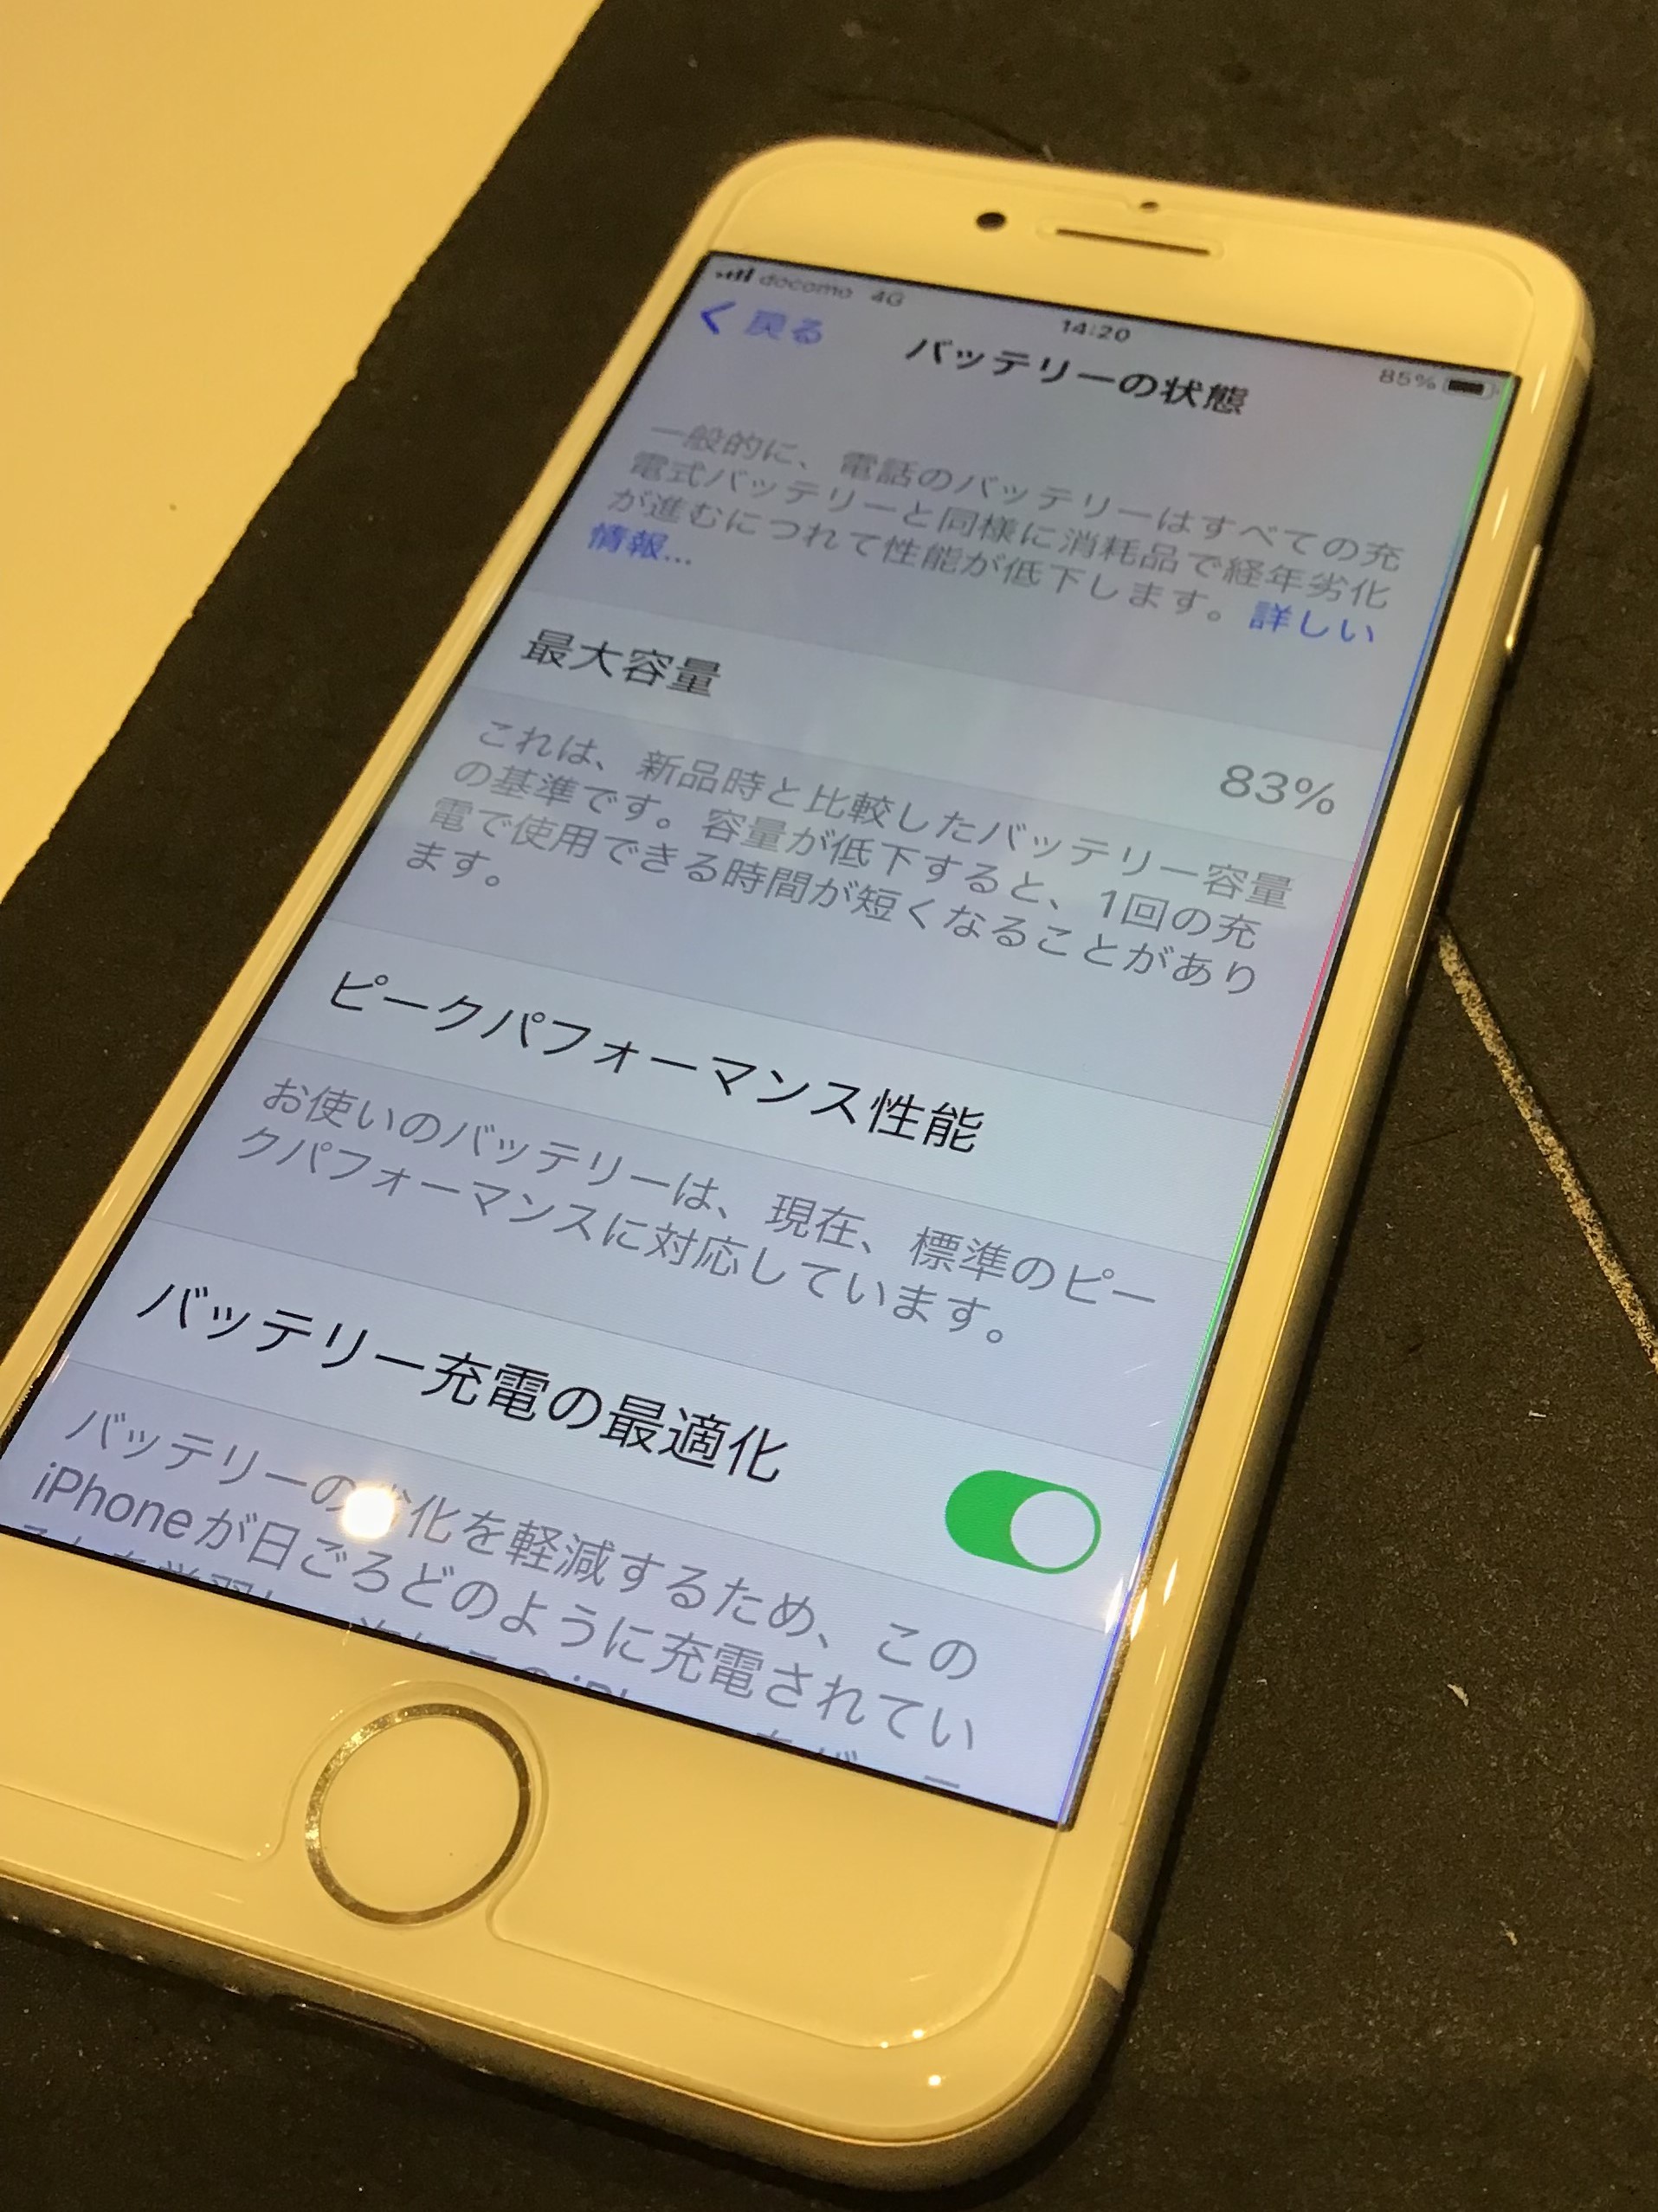 日本製 2ウェイ iPhone 7 Gold 32GB SIMフリー バッテリー最大容量83